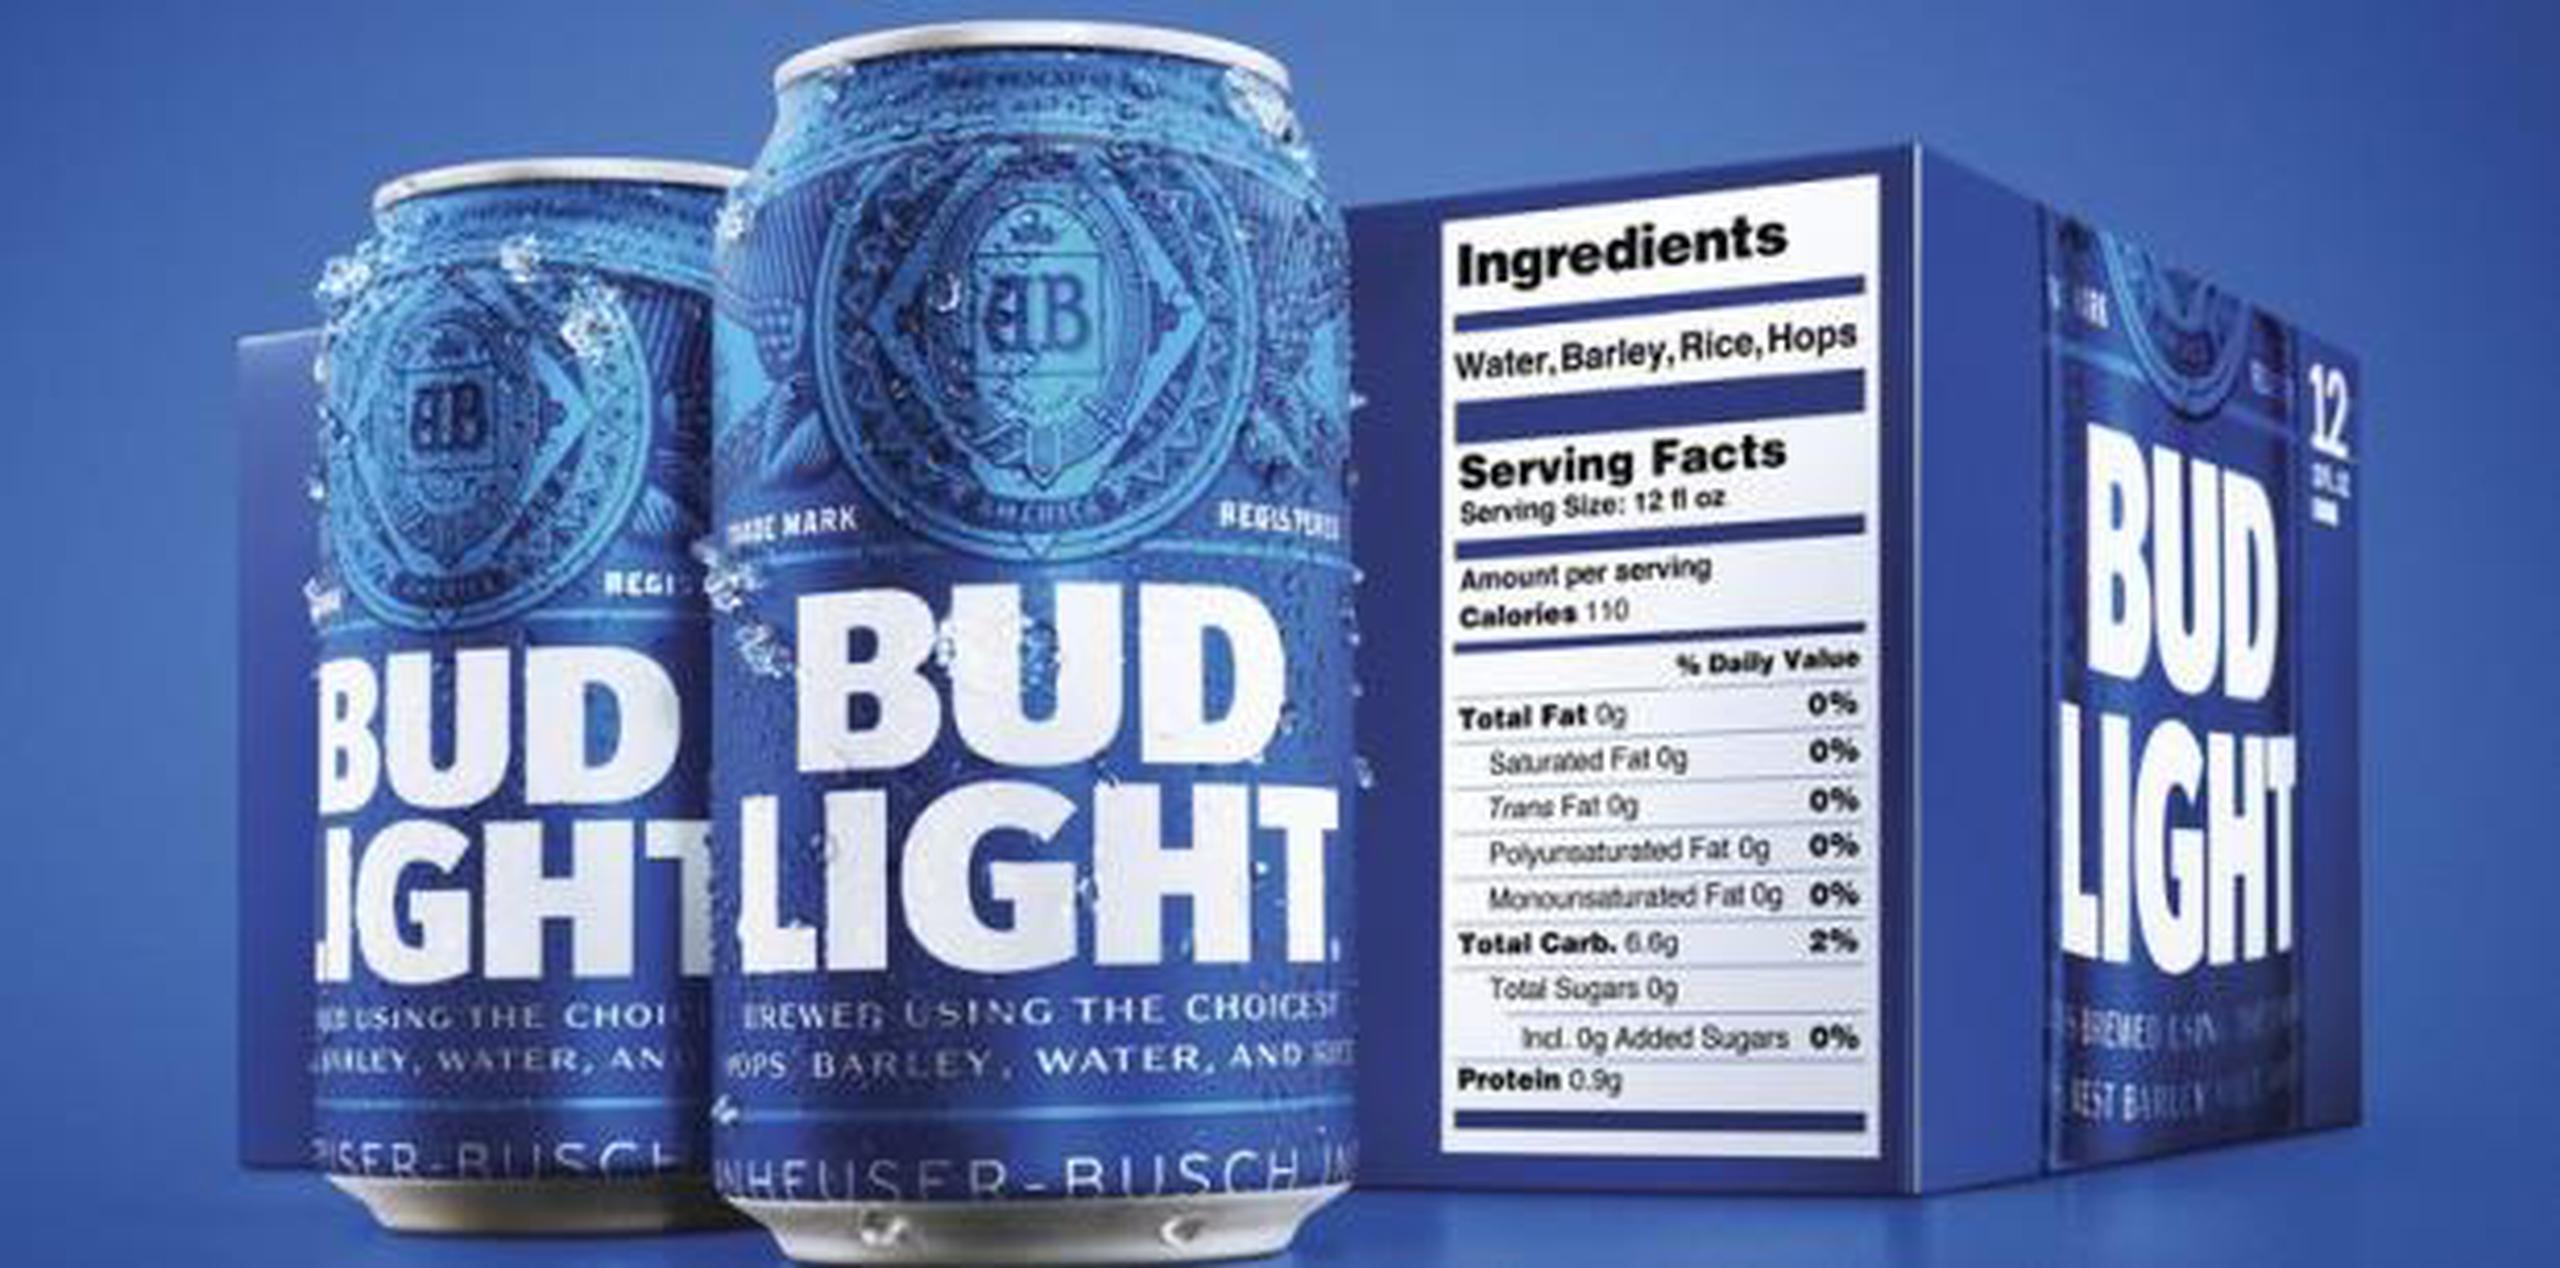 No hay ley que las obligue, pero las grandes cerveceras acordaron en 2016 que incluirían voluntariamente la información nutrimental de sus productos antes de 2020. (Bud Light vía AP)